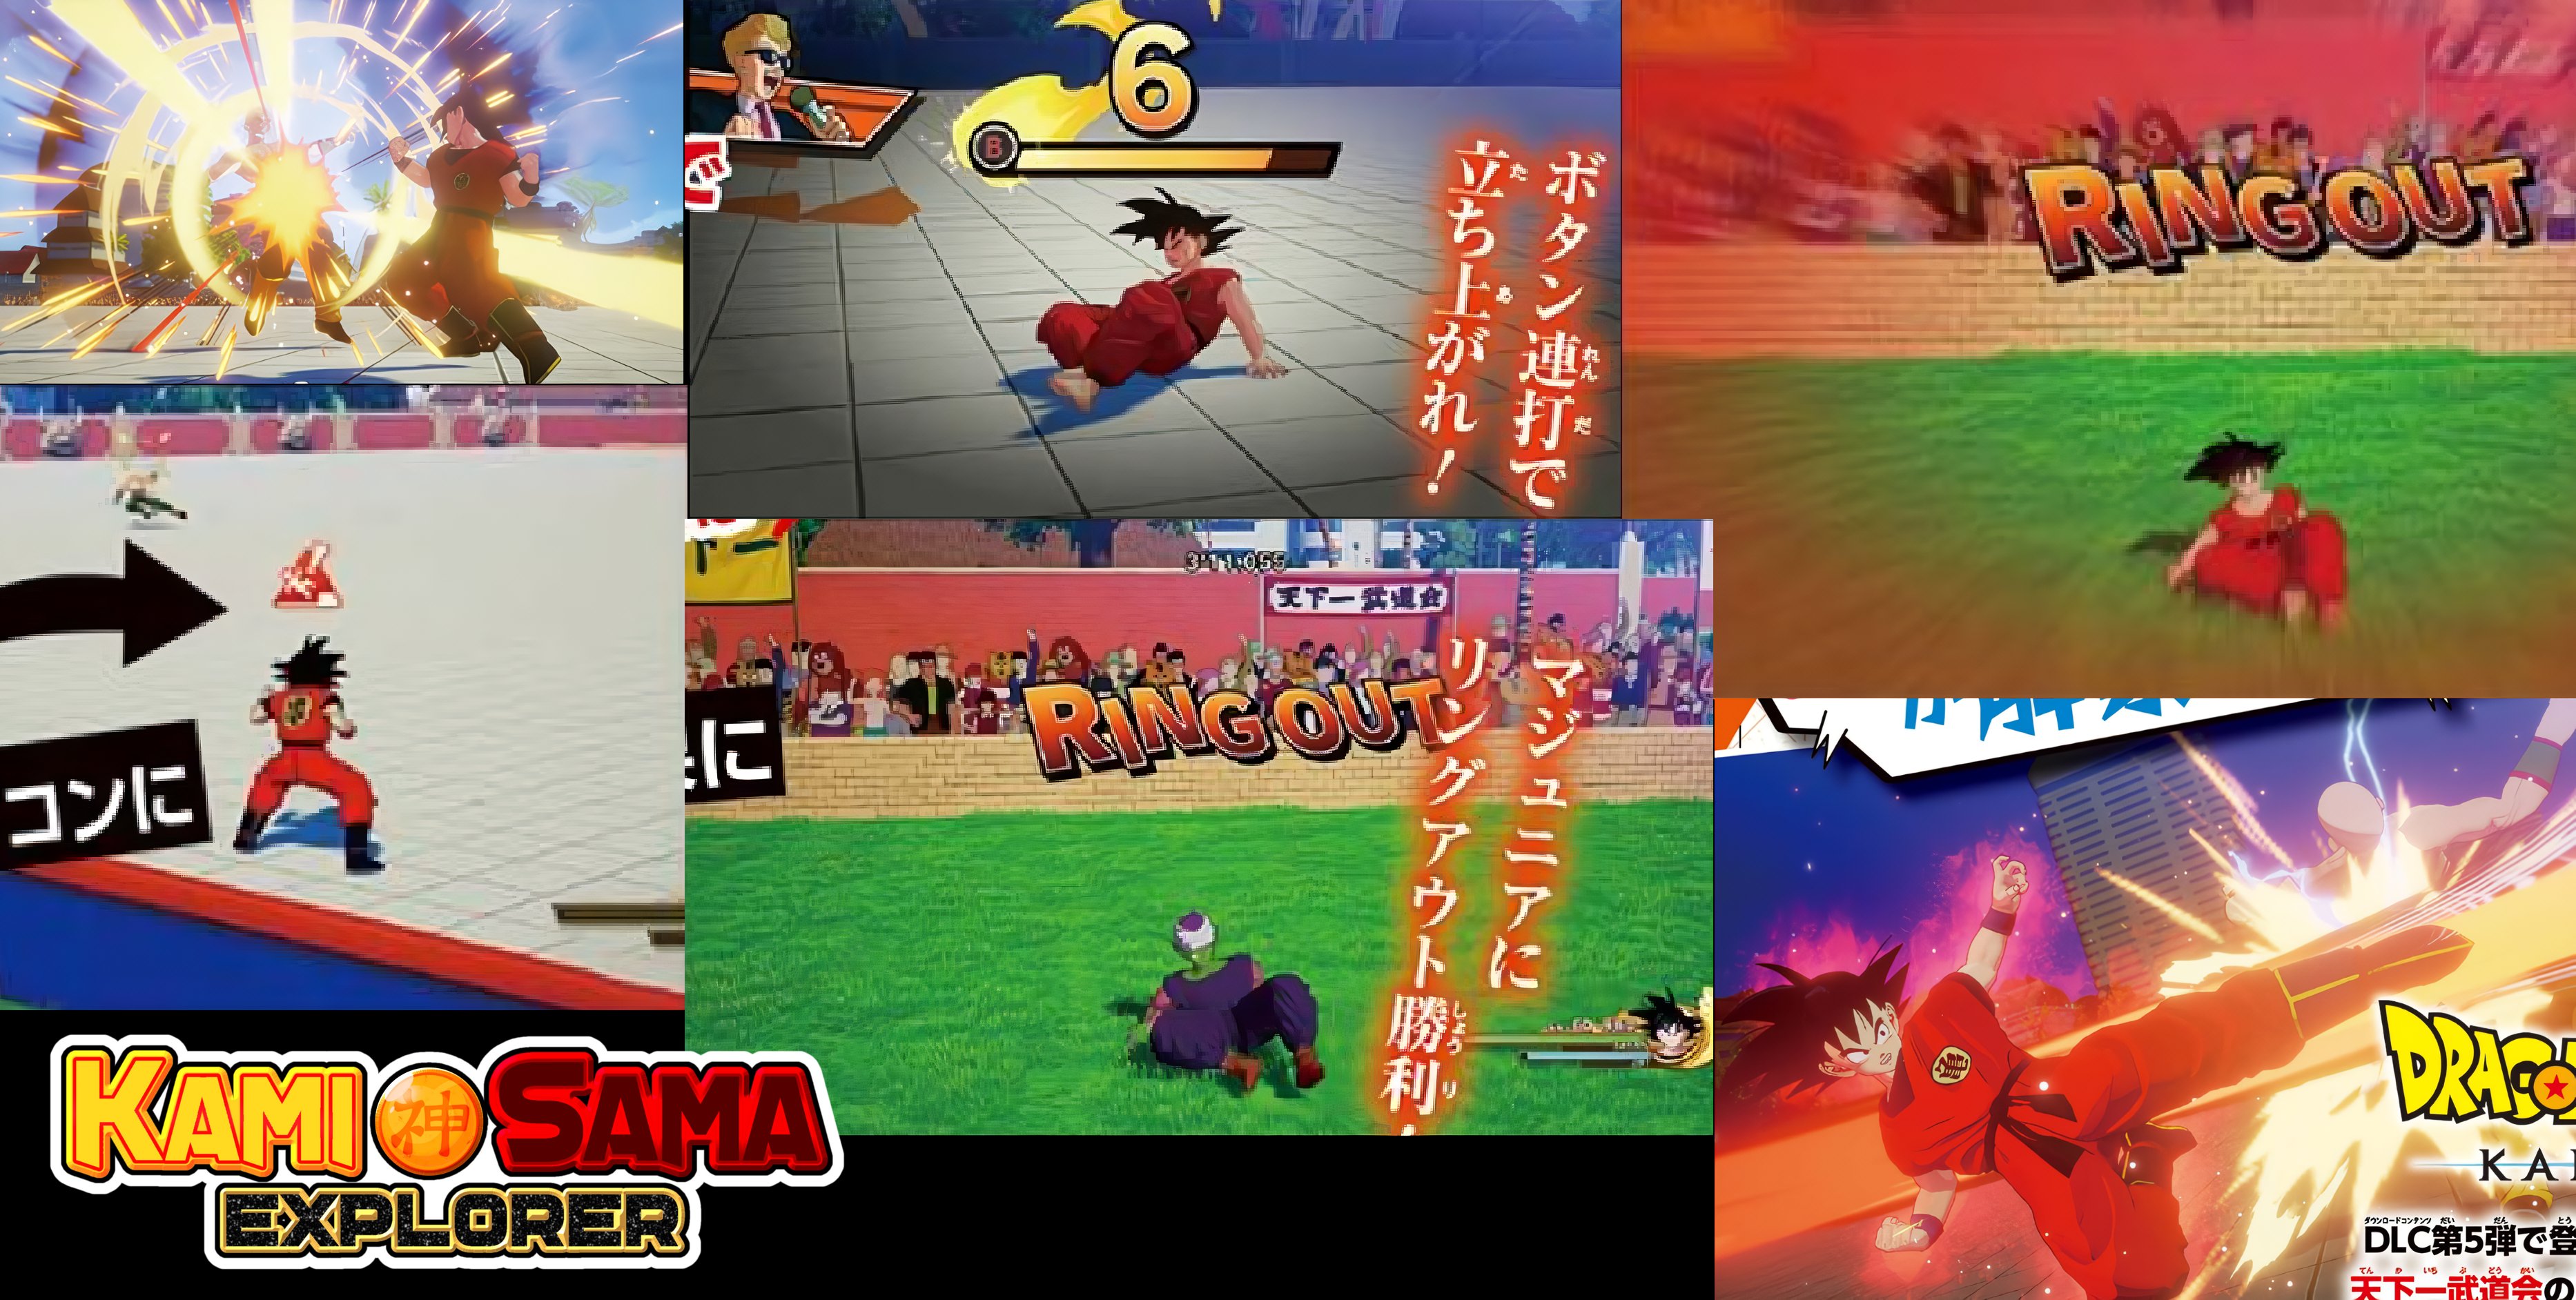 Dragon Ball Super - Site Oficial Atualizado & Novas Imagens! - Kami Sama  Explorer